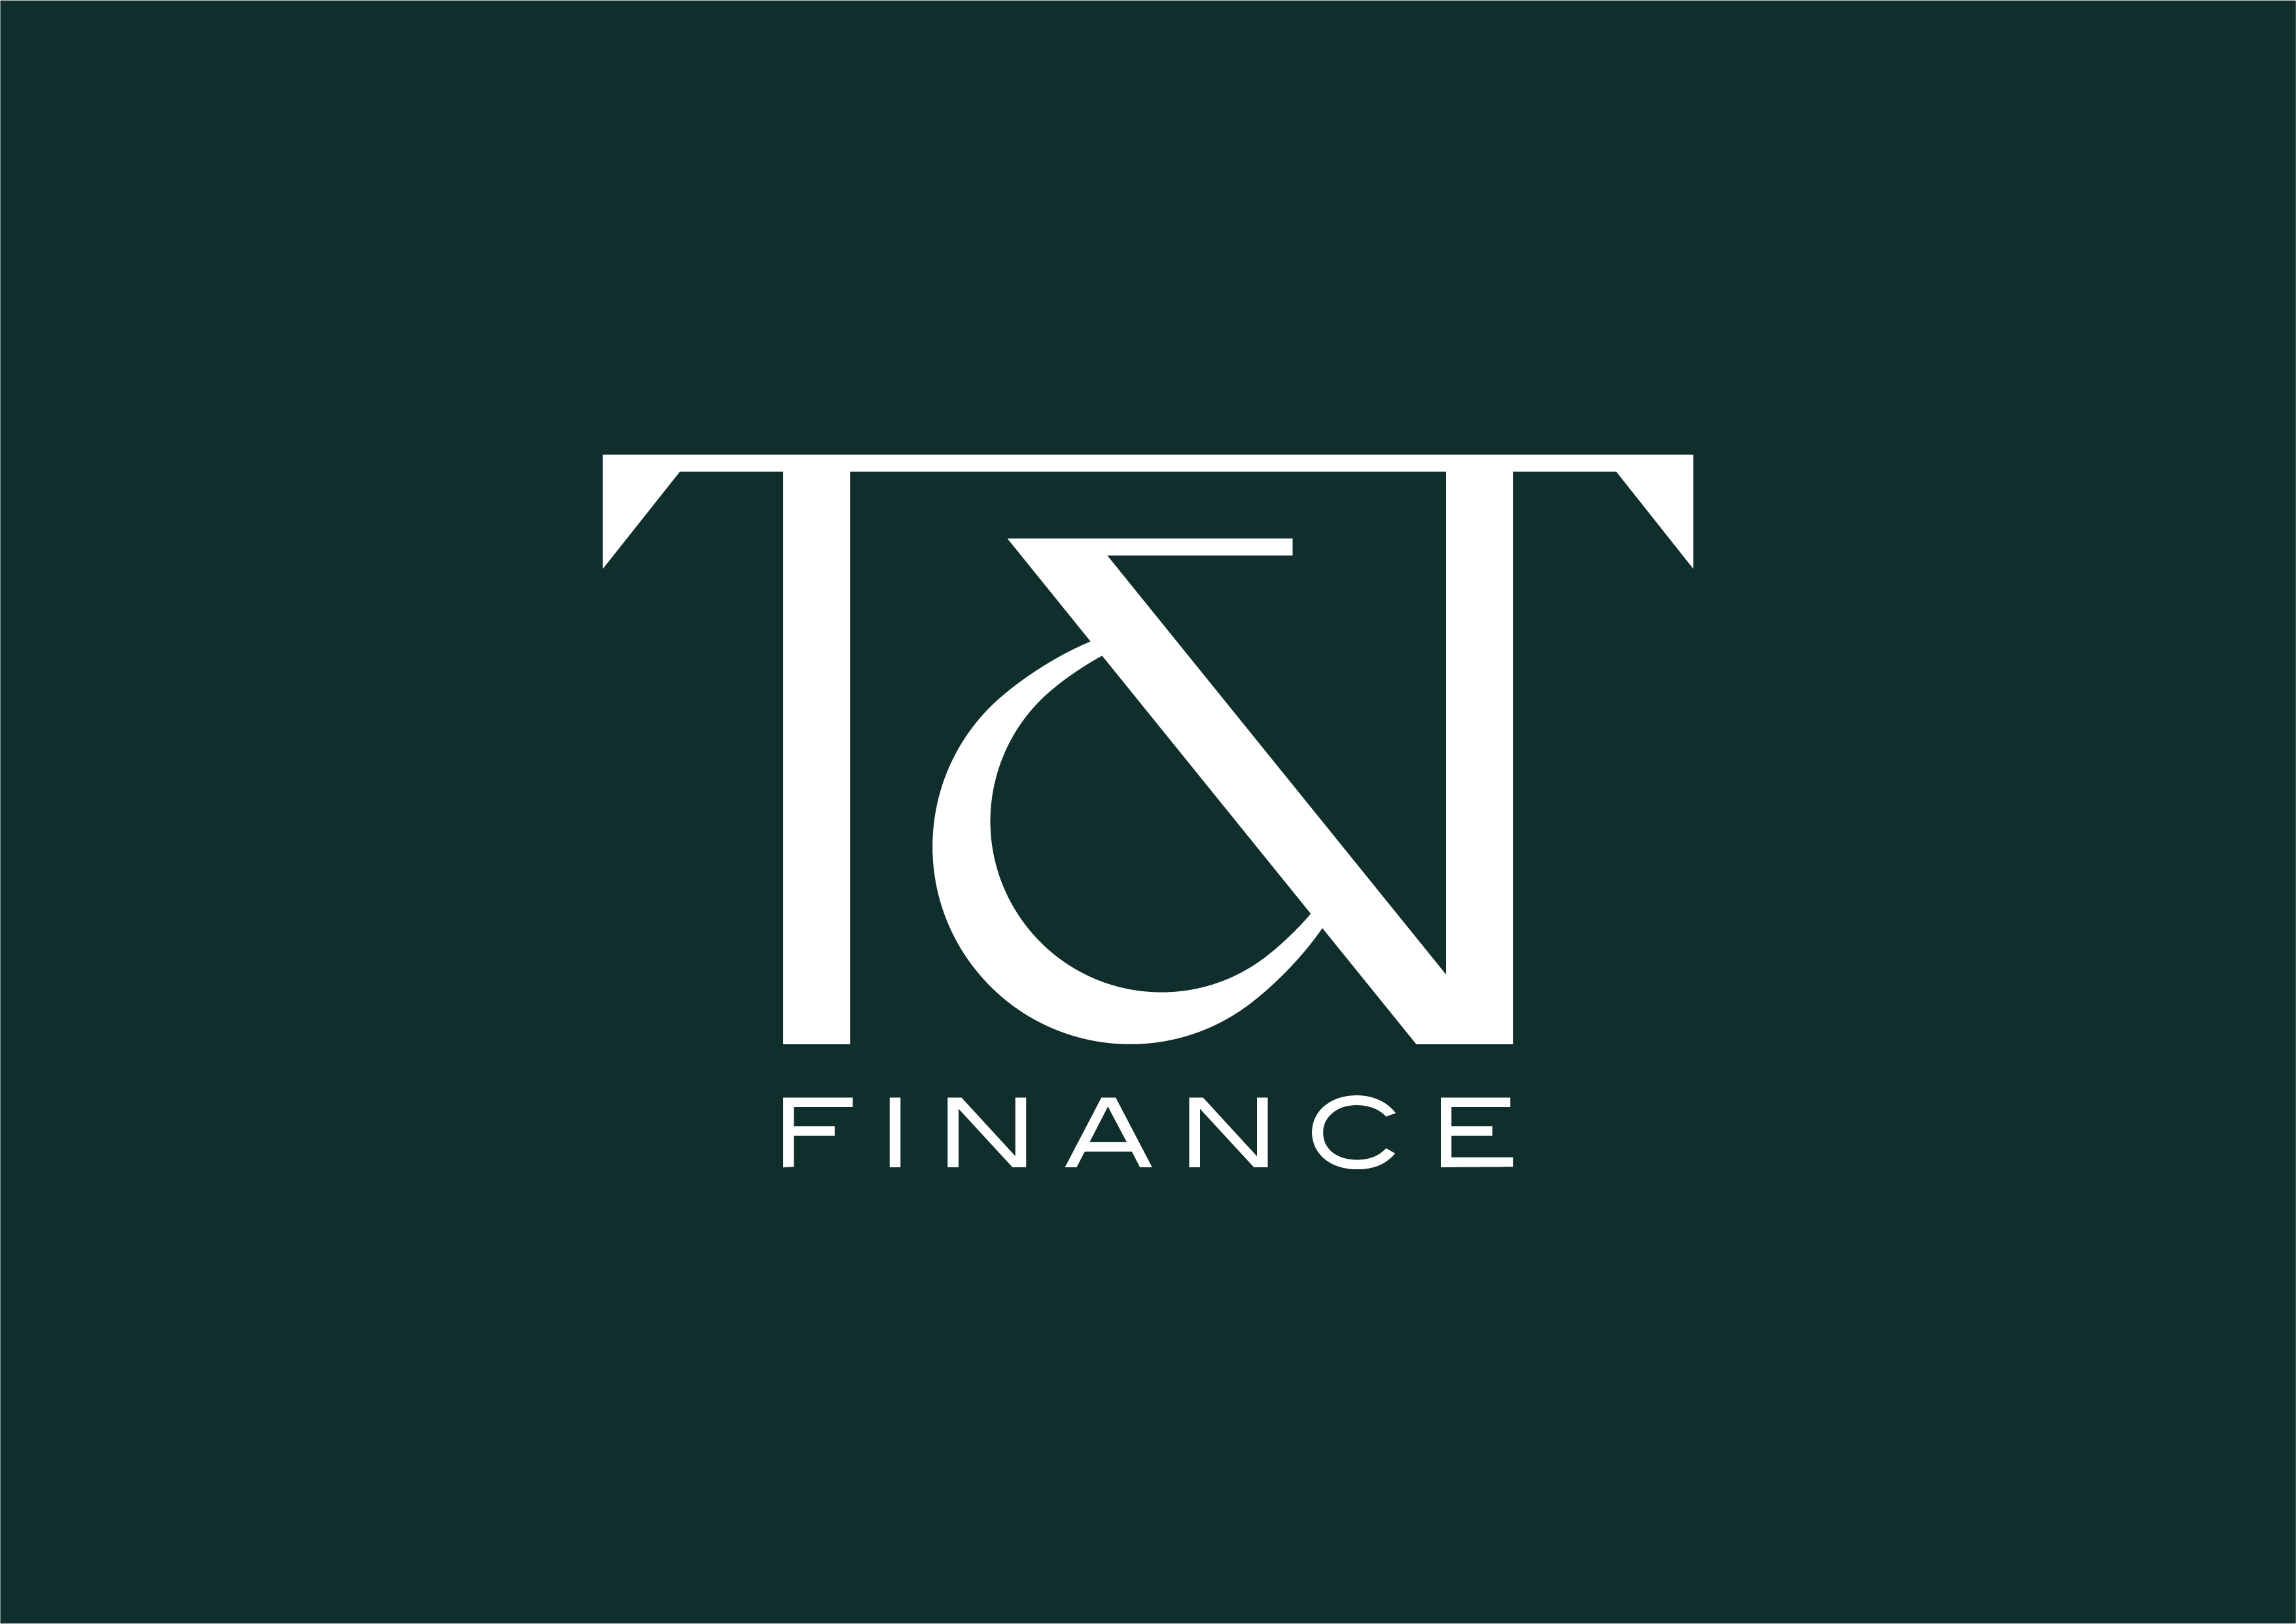 T&T Finance